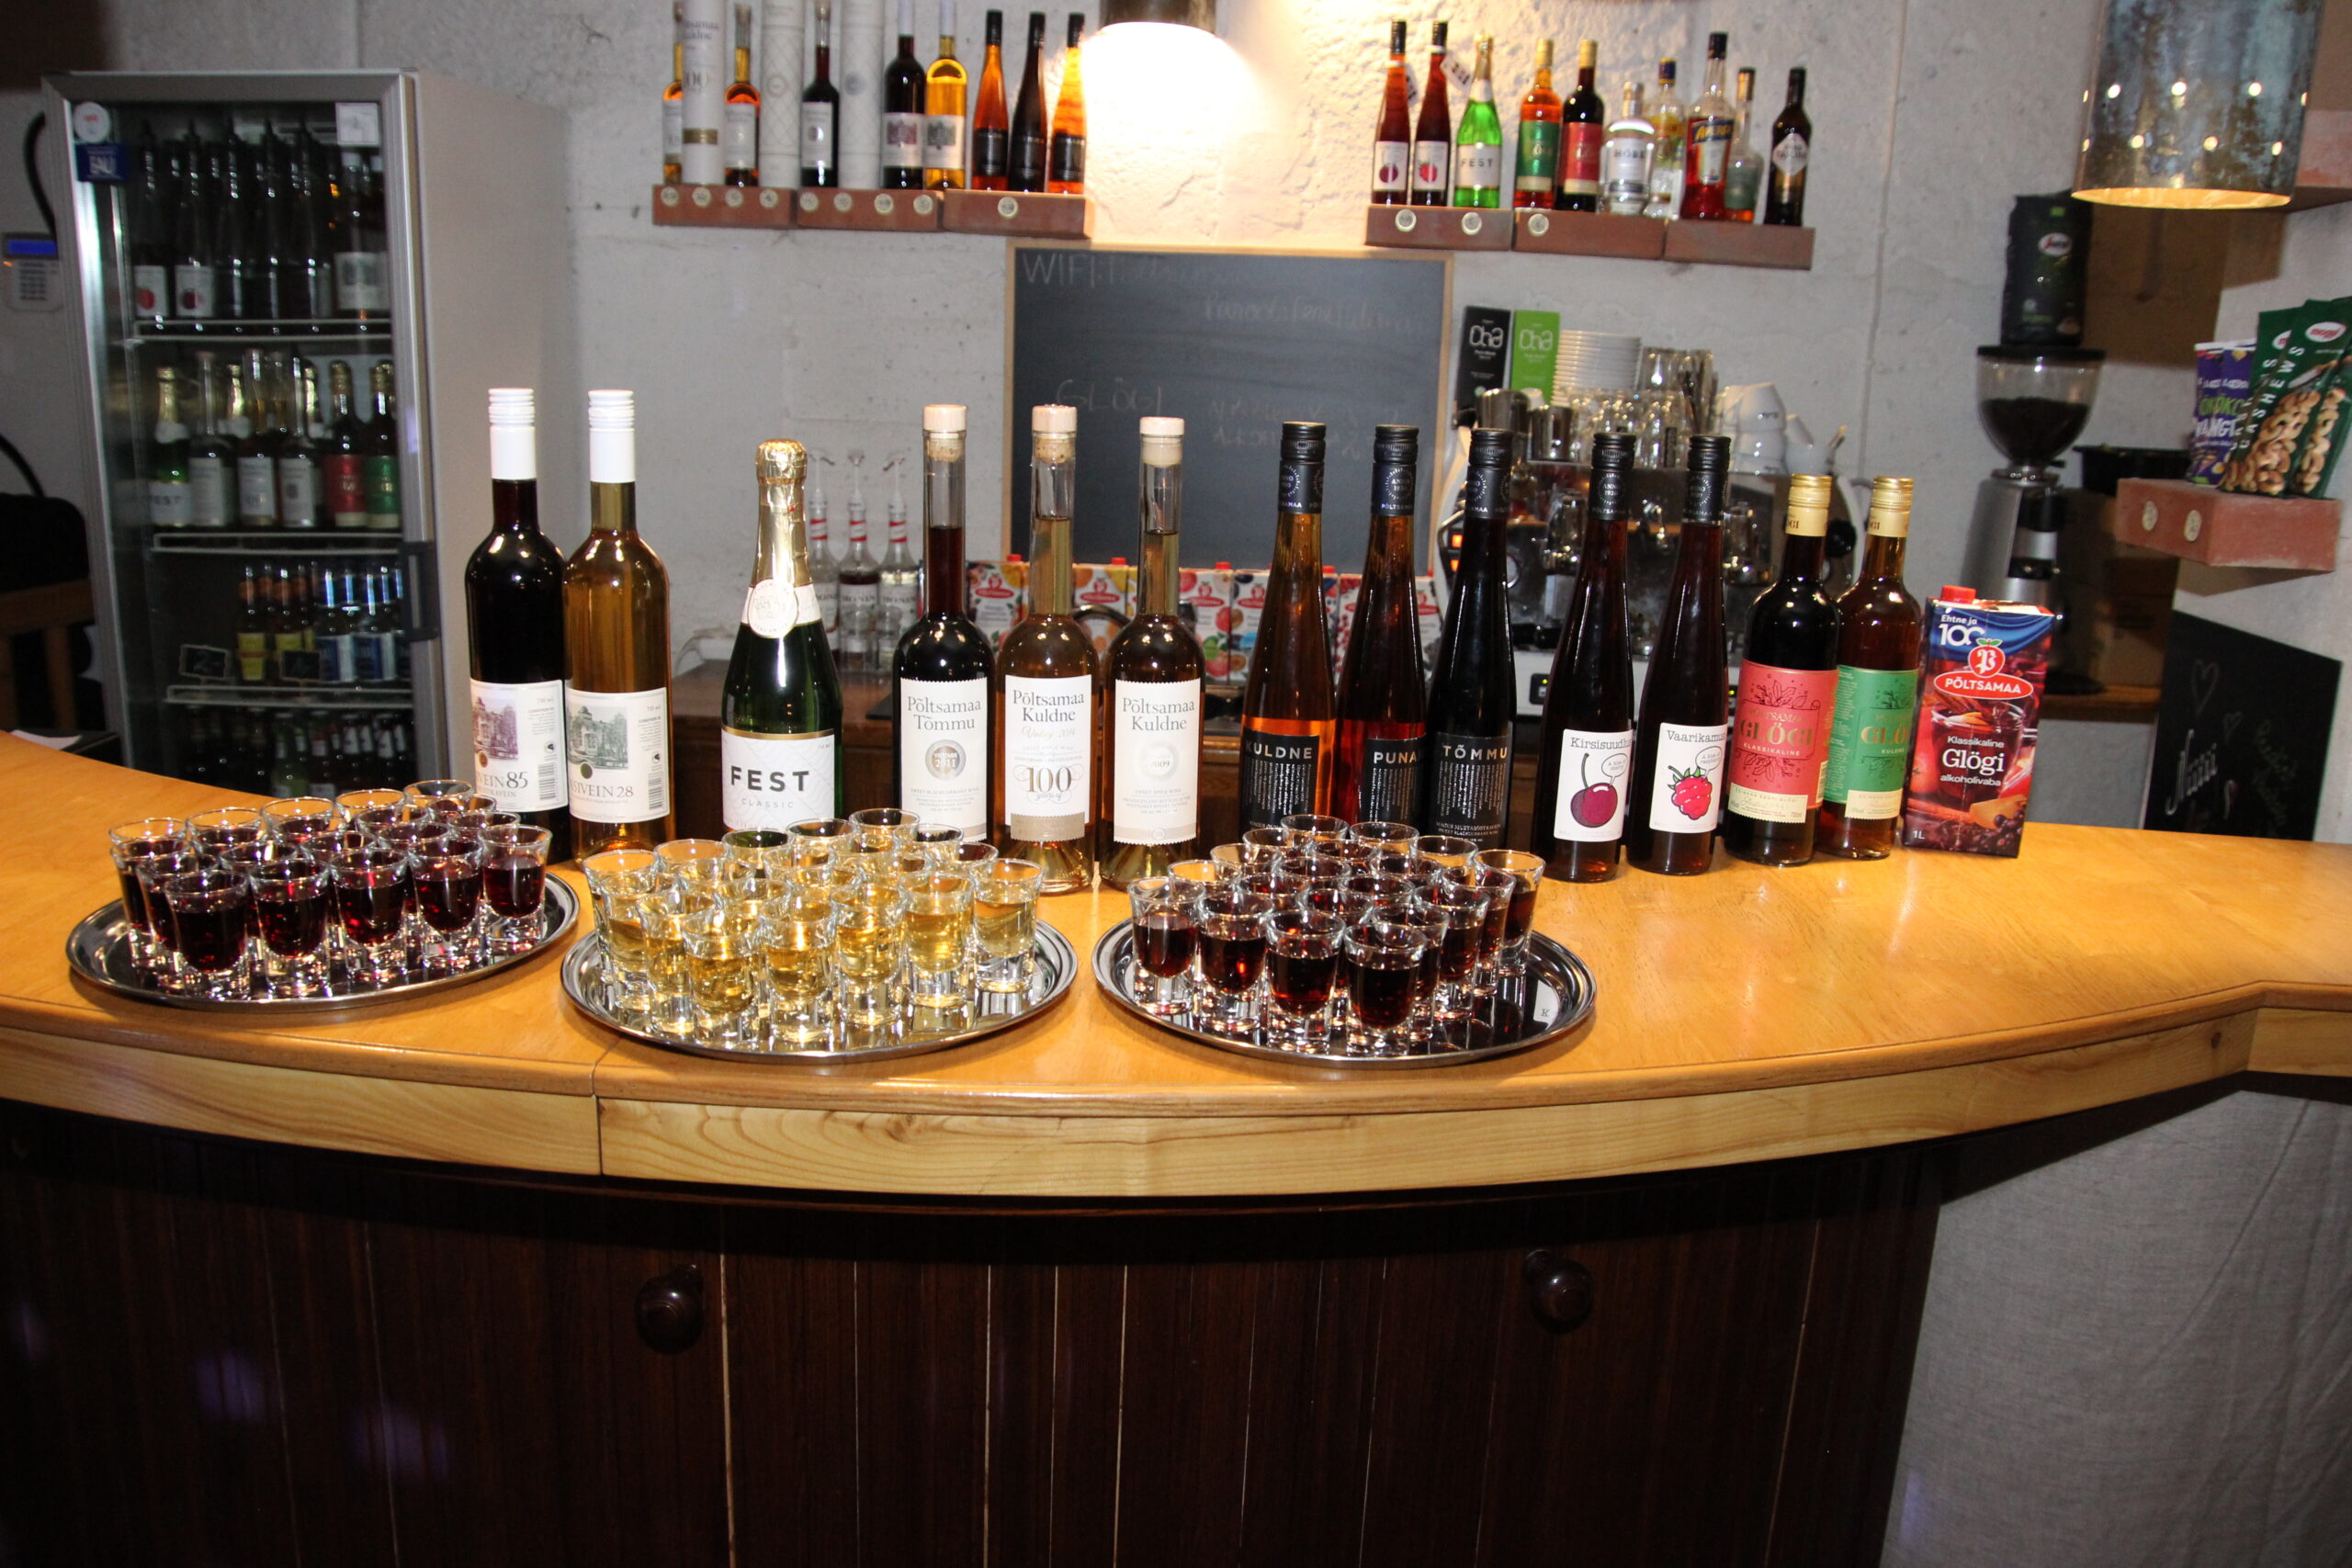 Veinide valikule lisaks toodeti ka glögi, alkoholivaba glögi jääb tootmisse ka edaspidi. Foto Raimo Metsamärt.